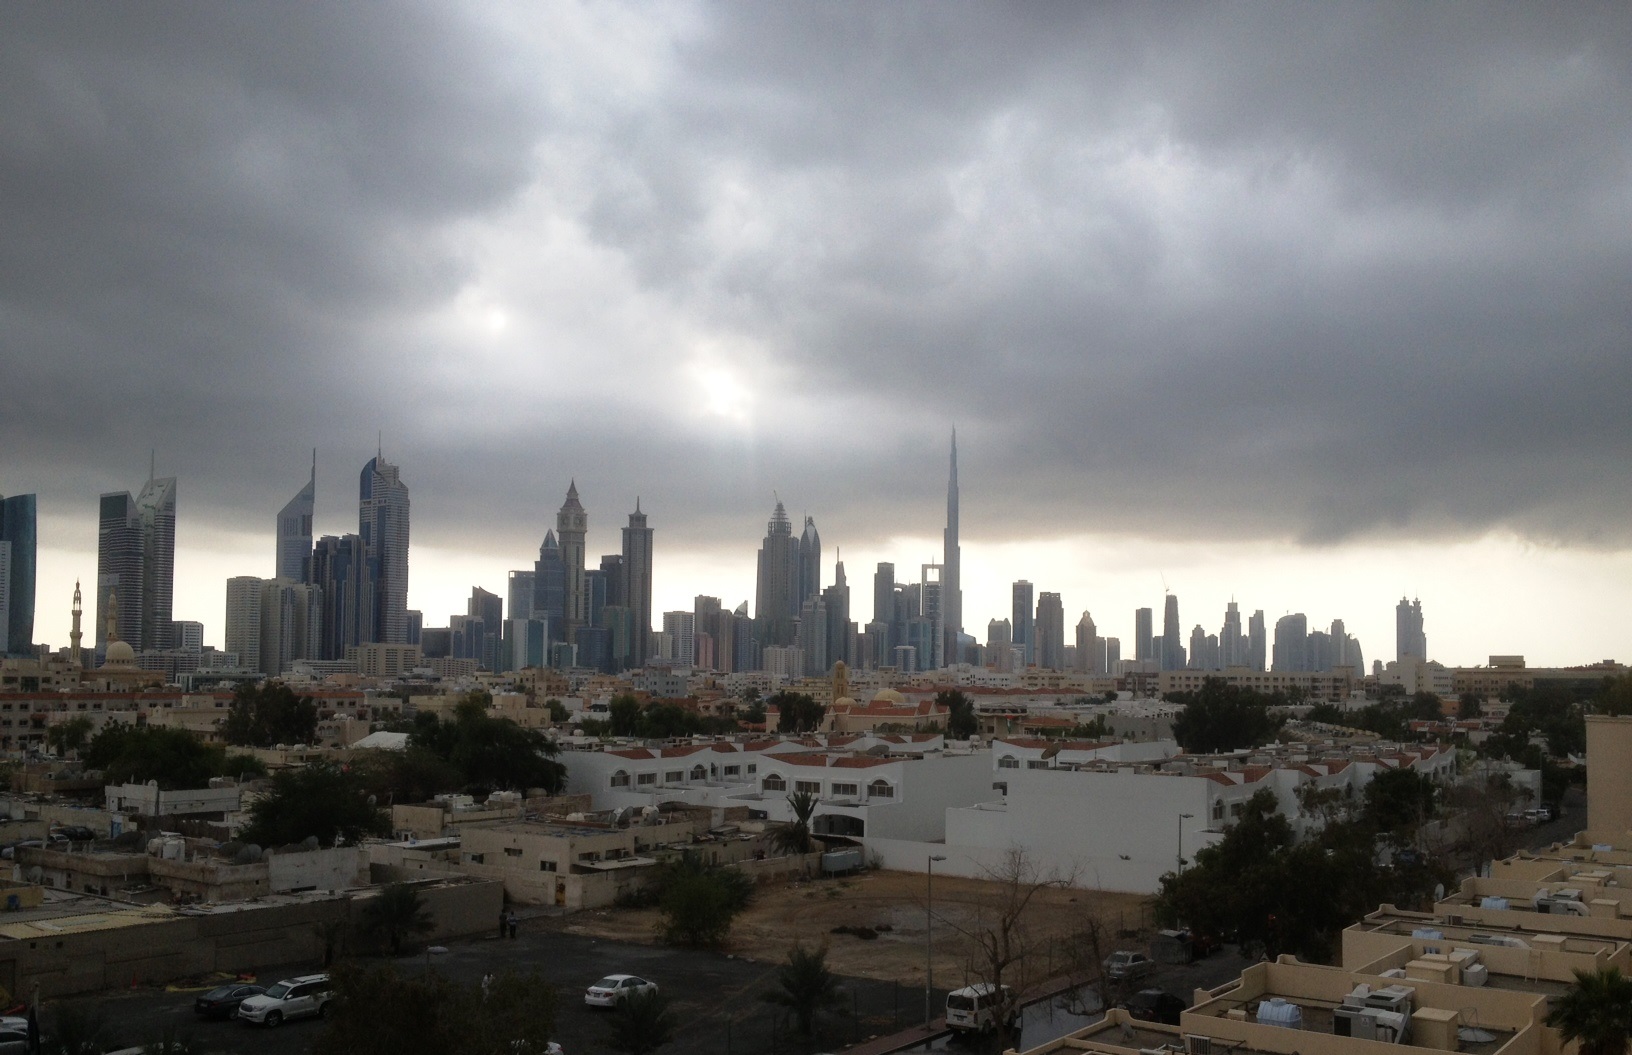 Ливни в оаэ. Буря в Дубае. Дубай окраины города. Дождь в Абу Даби. Дубай пасмурно.